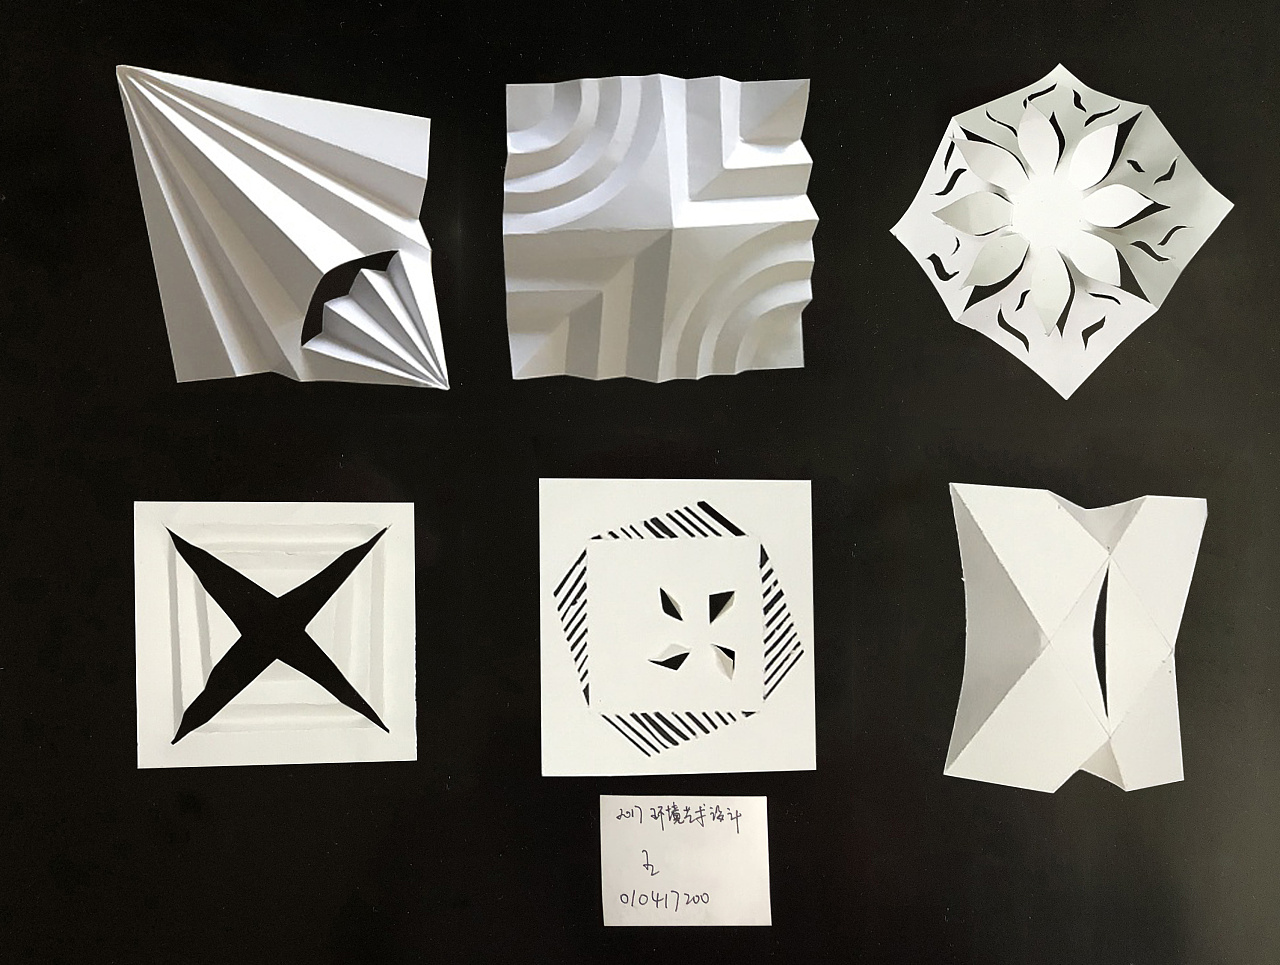 立体构成作品 练习 作业 手绘 制作 造型 几何折纸创意